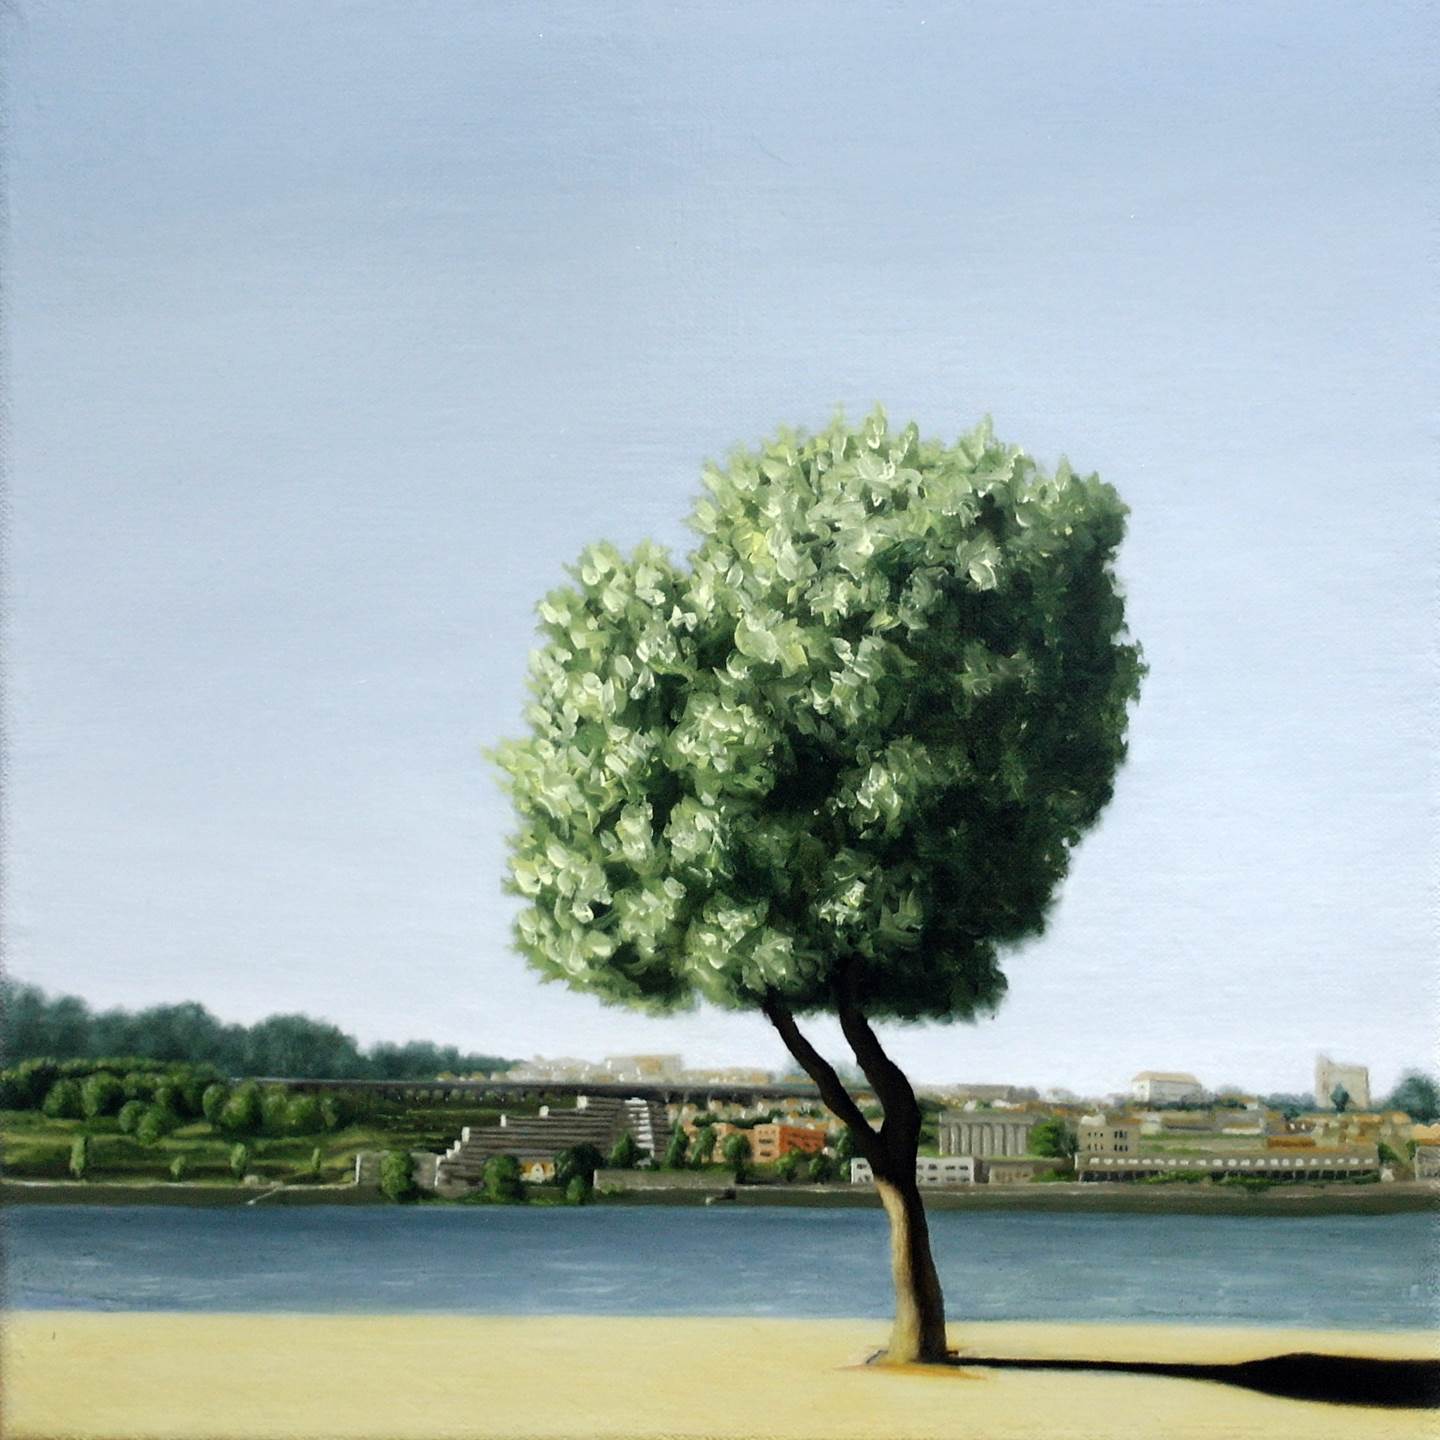 Tiro - Memento 1, original Landscape Canvas Painting by Alexandre Coxo